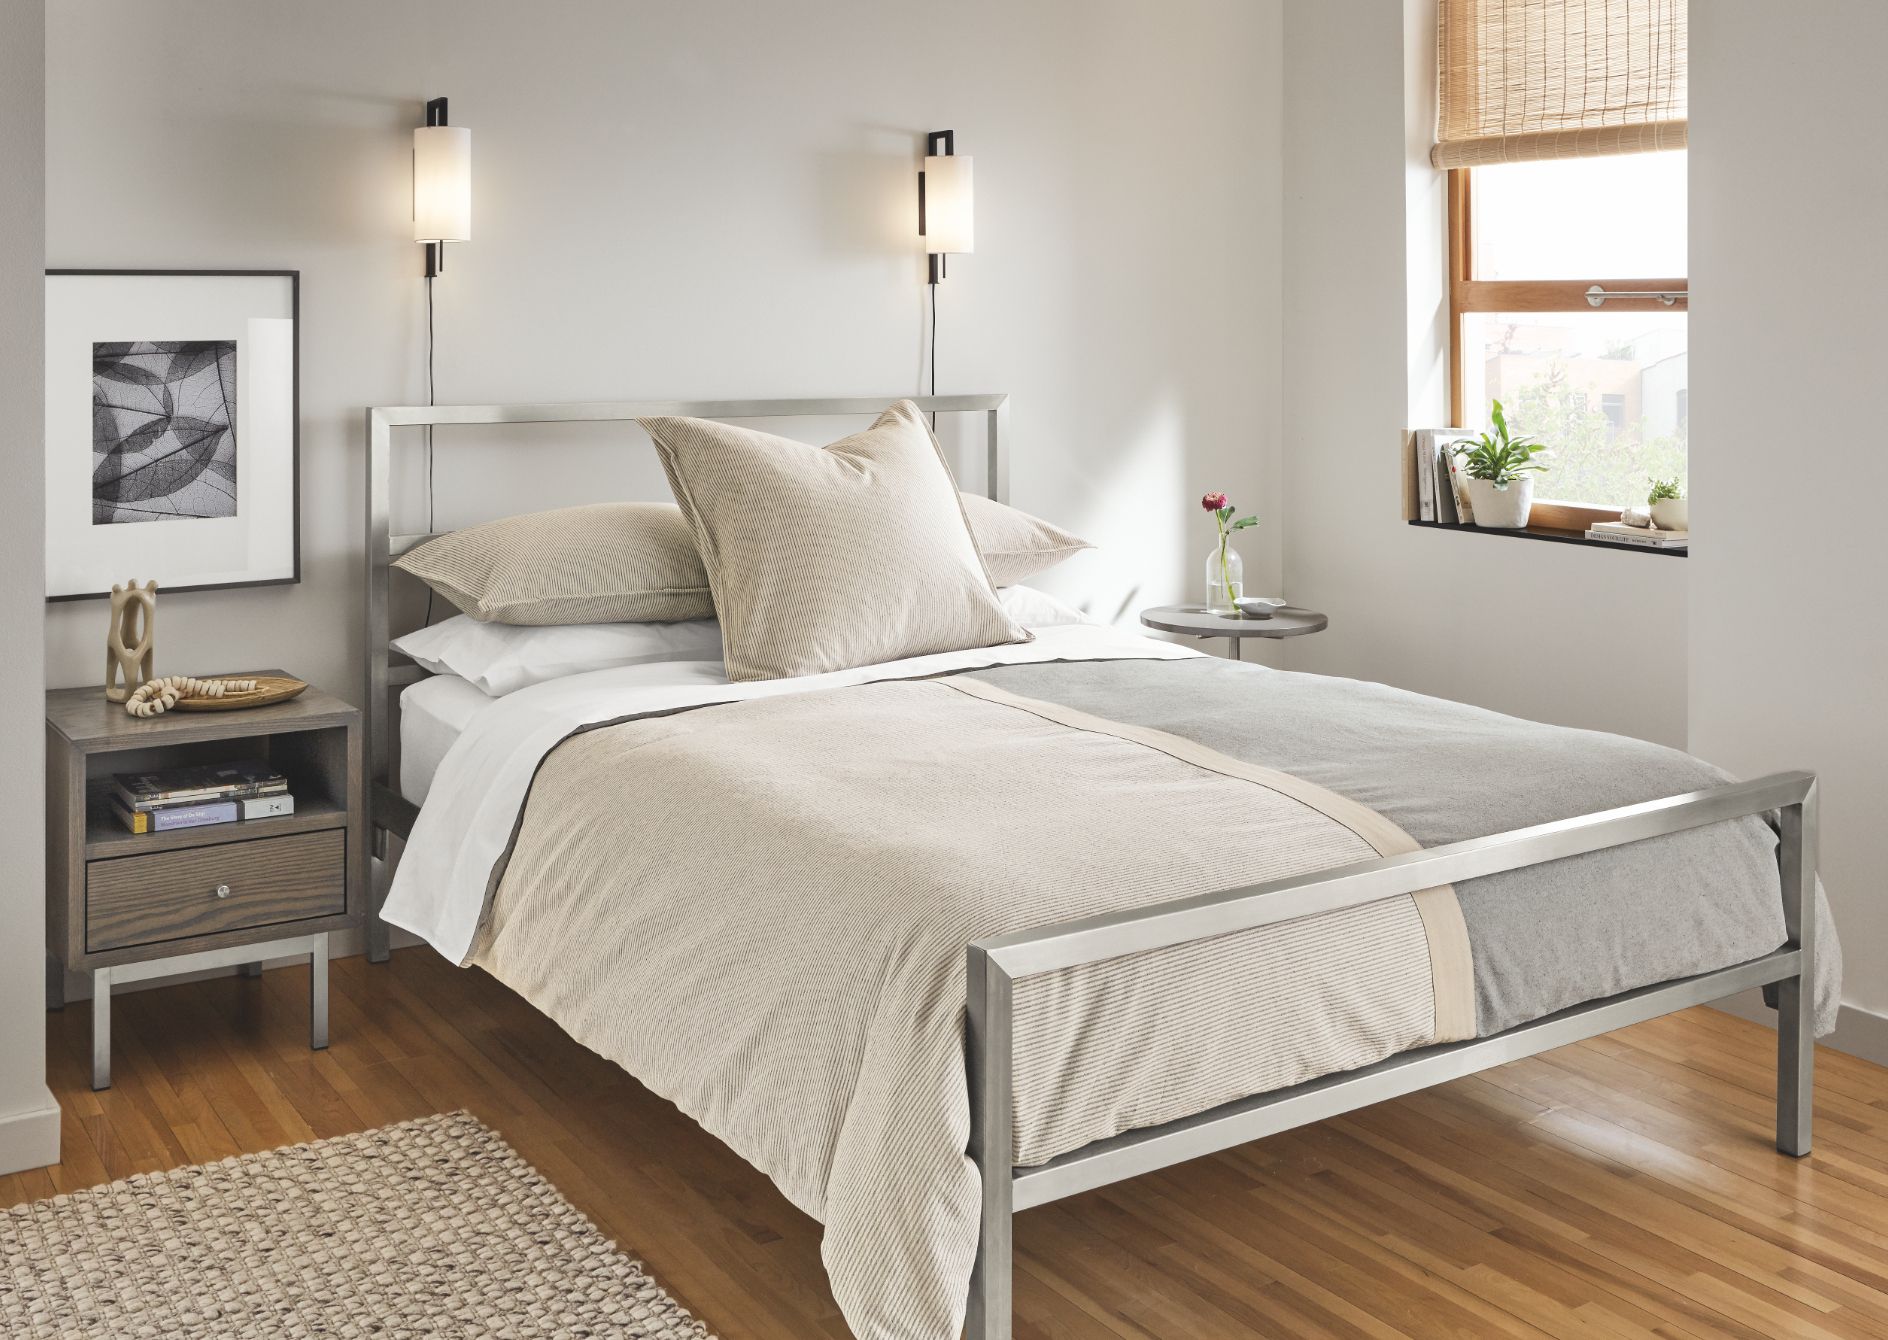  Small  Bedroom  Ideas  Furniture Ideas  Advice Room  